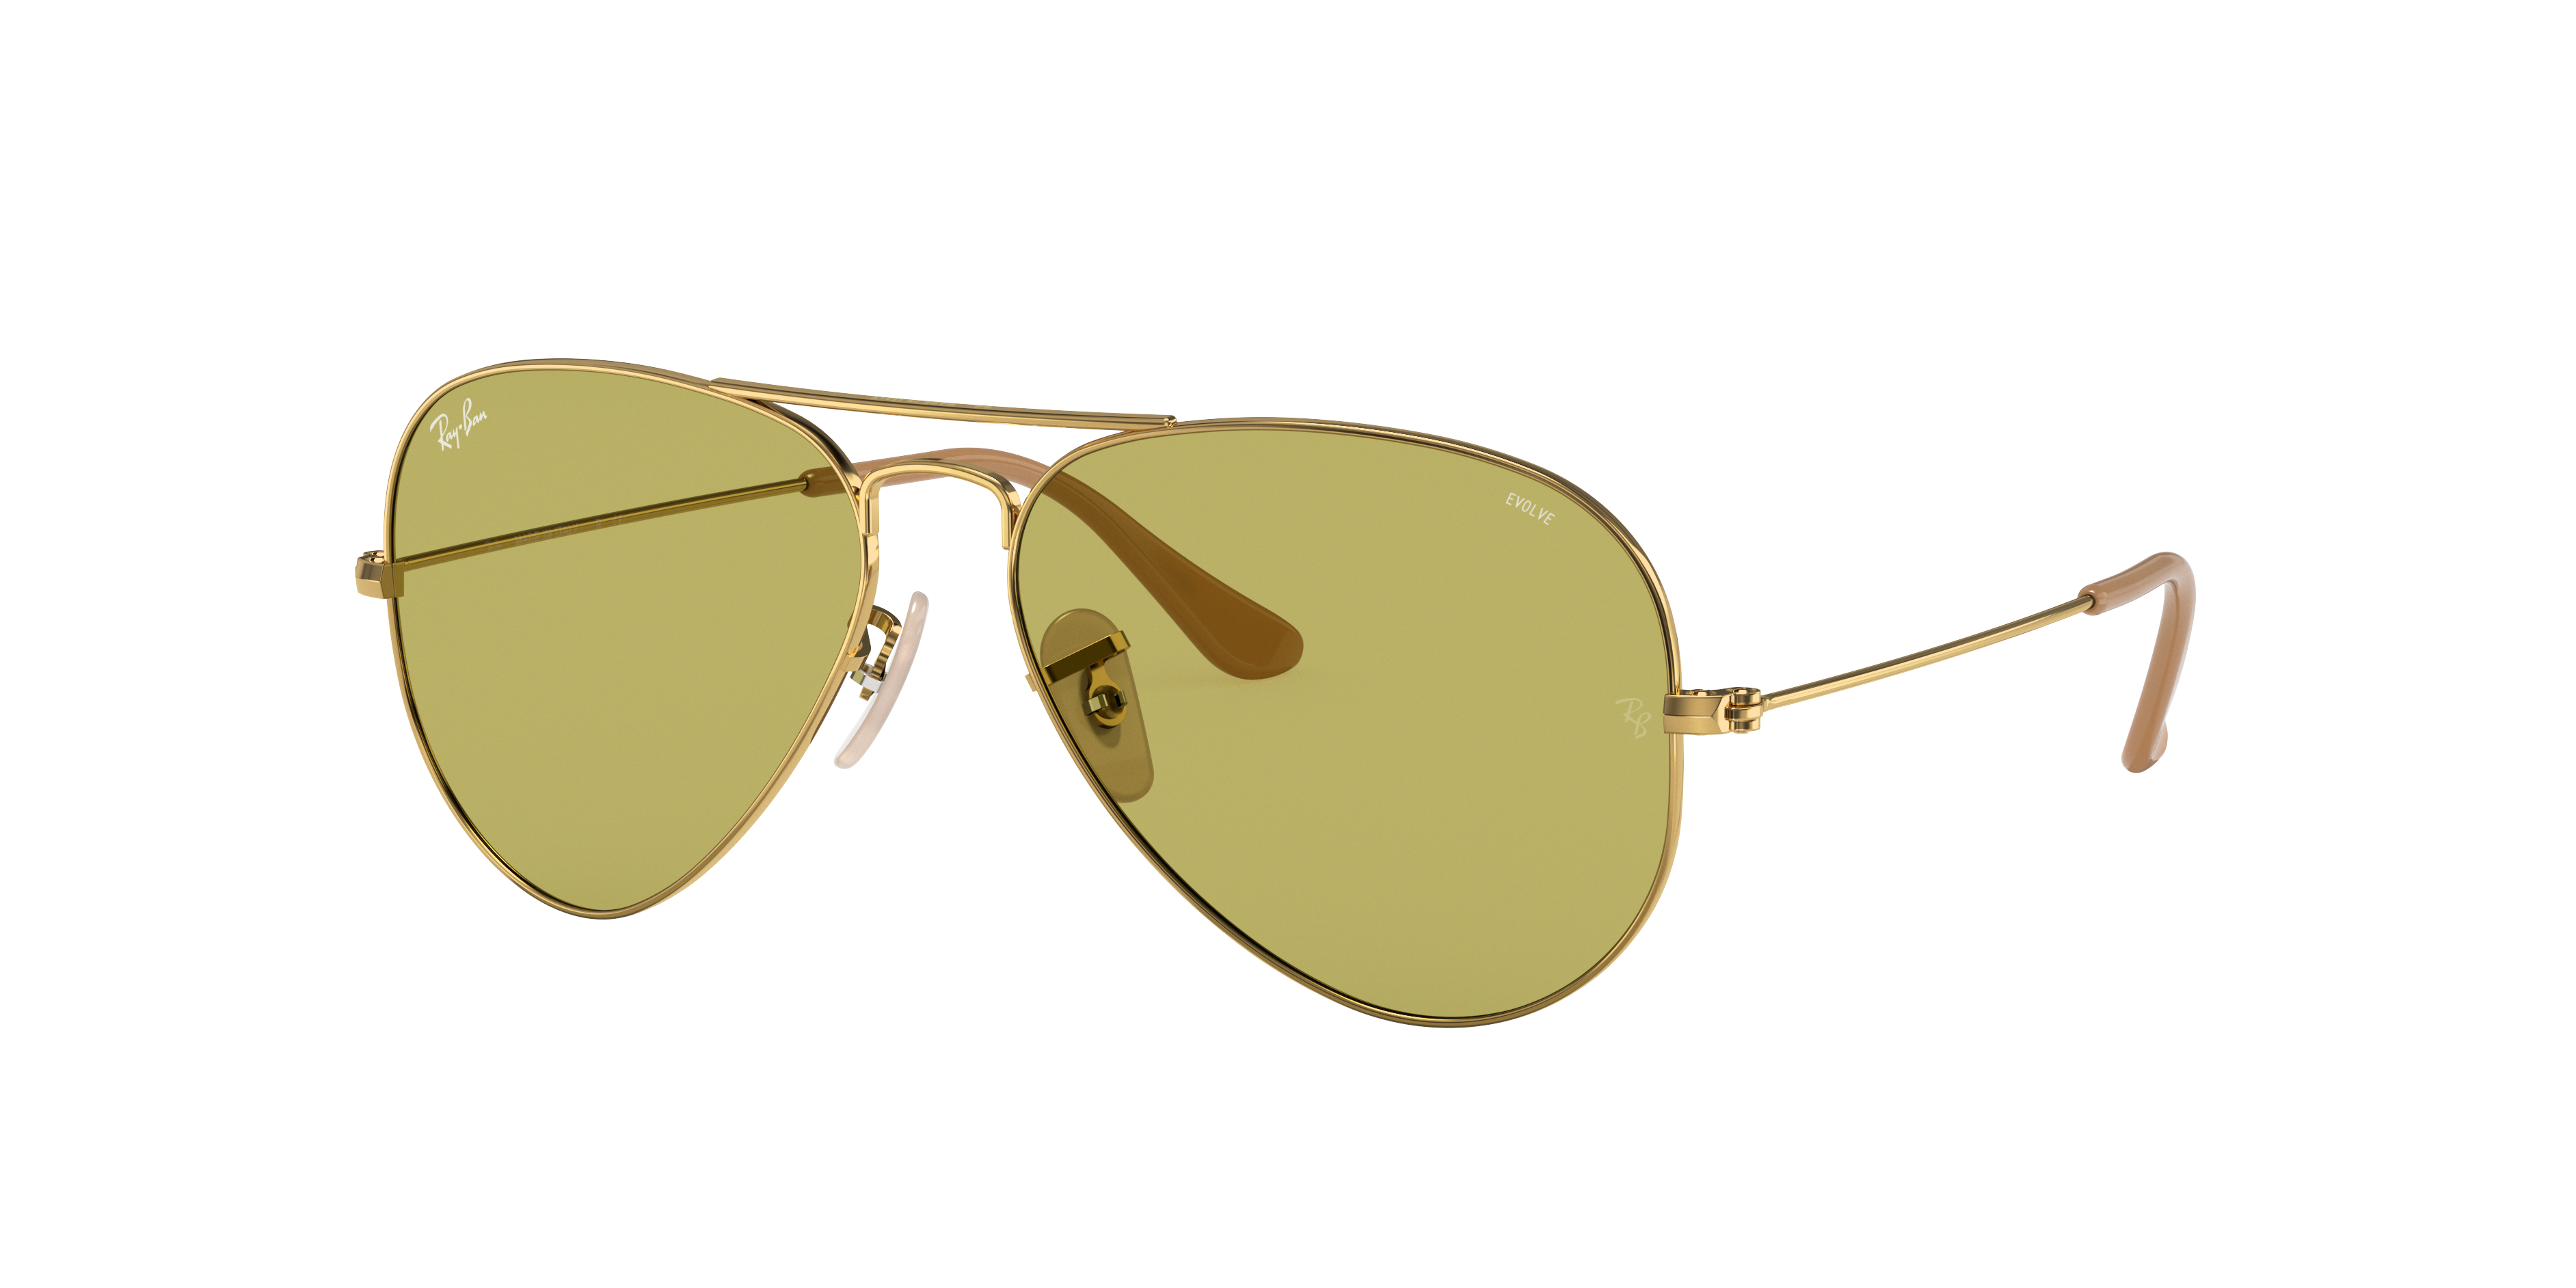 ray ban yellow aviator sunglasses